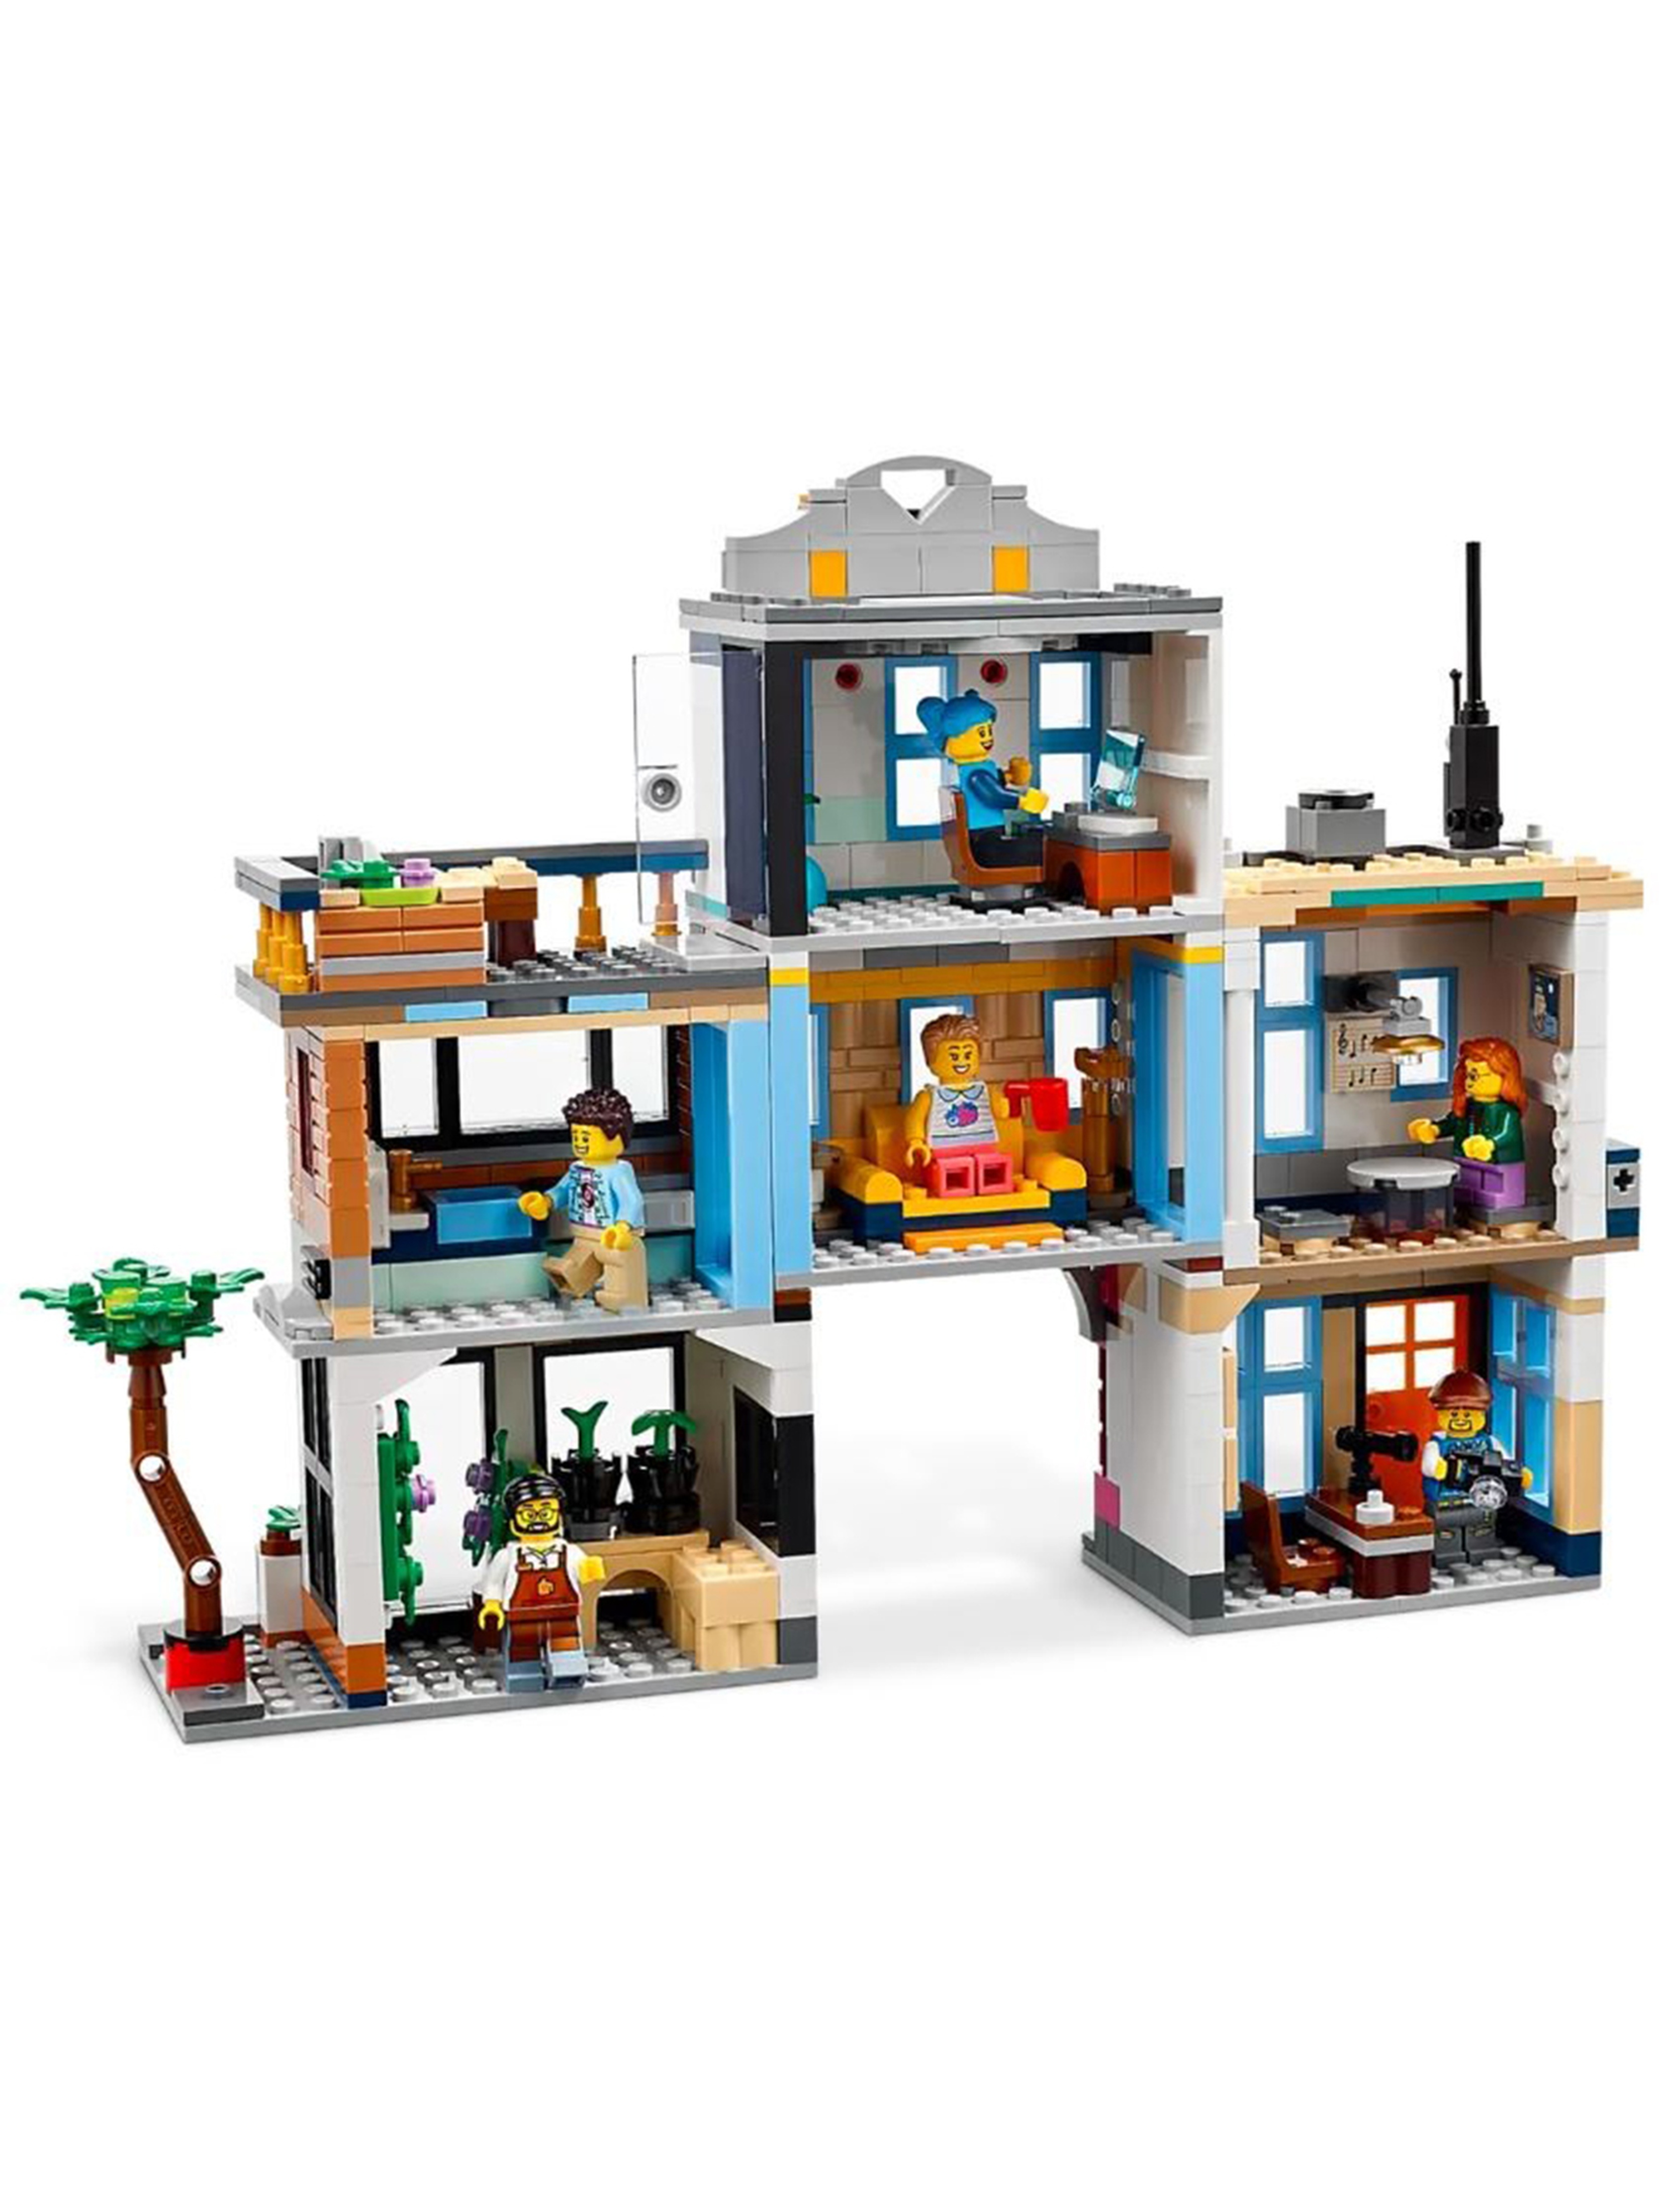 Klocki LEGO Creator 31141 Główna ulica - 1459 elementów, wiek 9 +